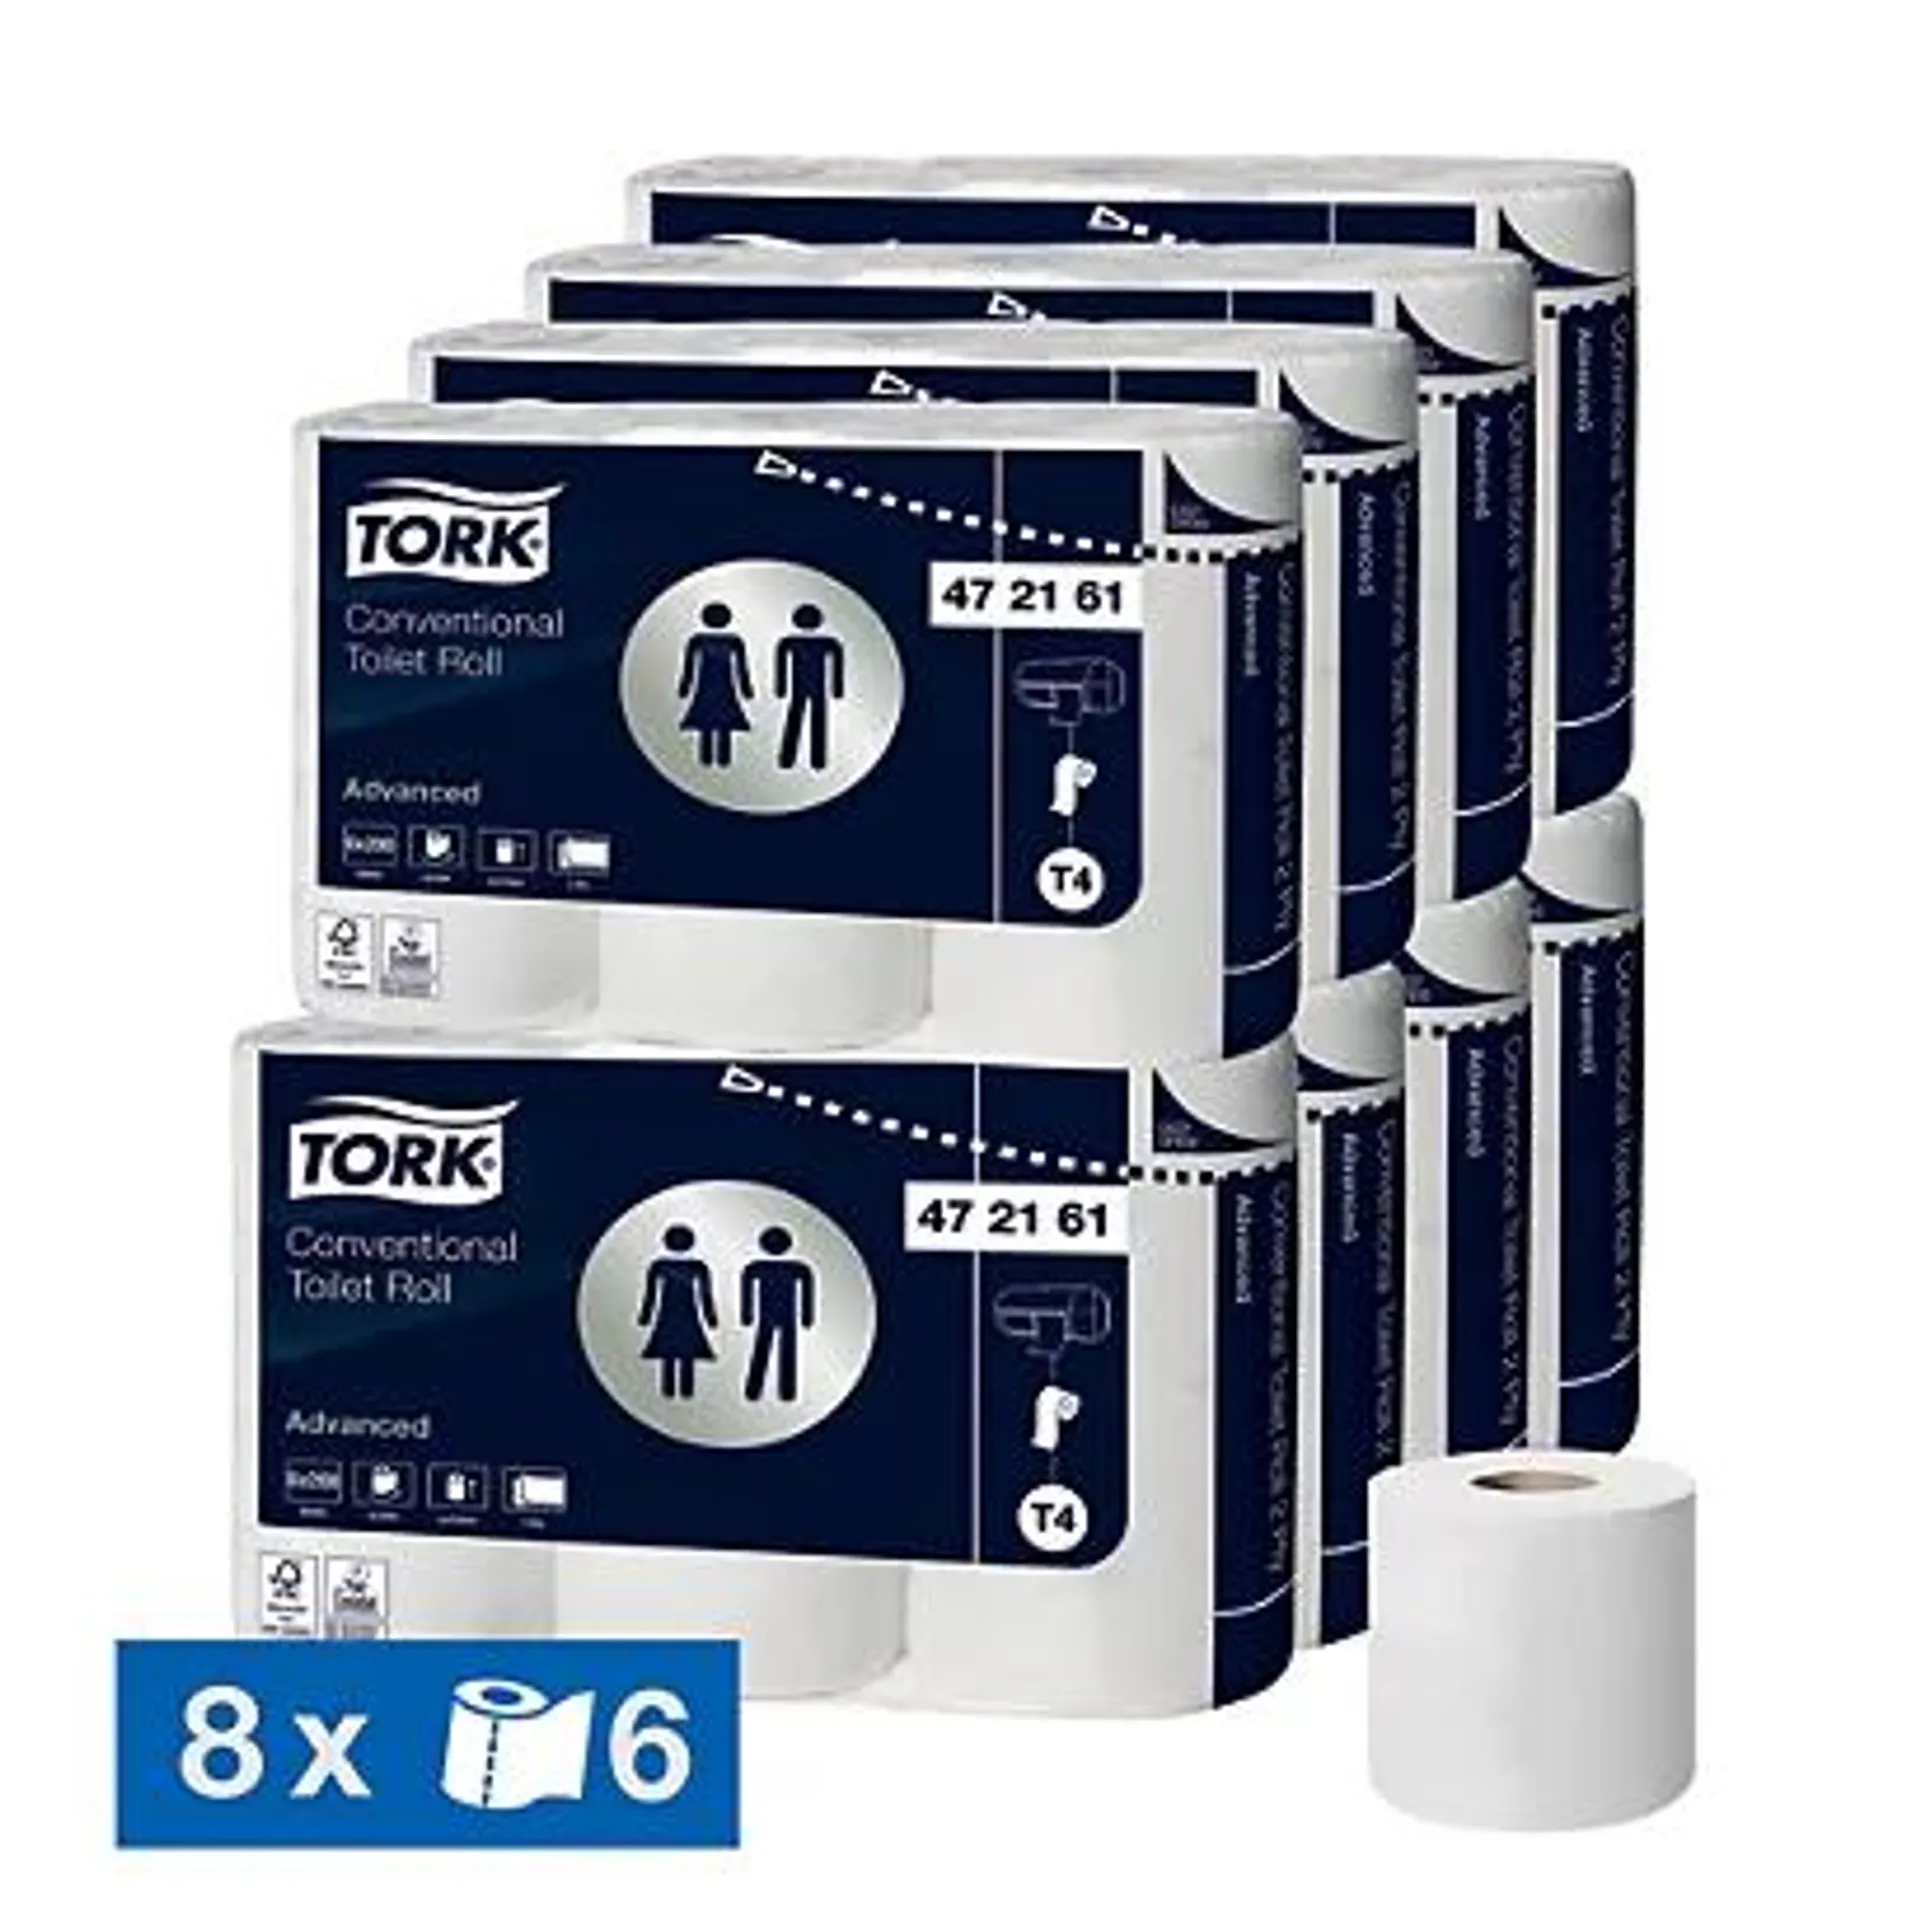 Toiletpapier Tork Advanced T4 2-laags, set van 48 rollen